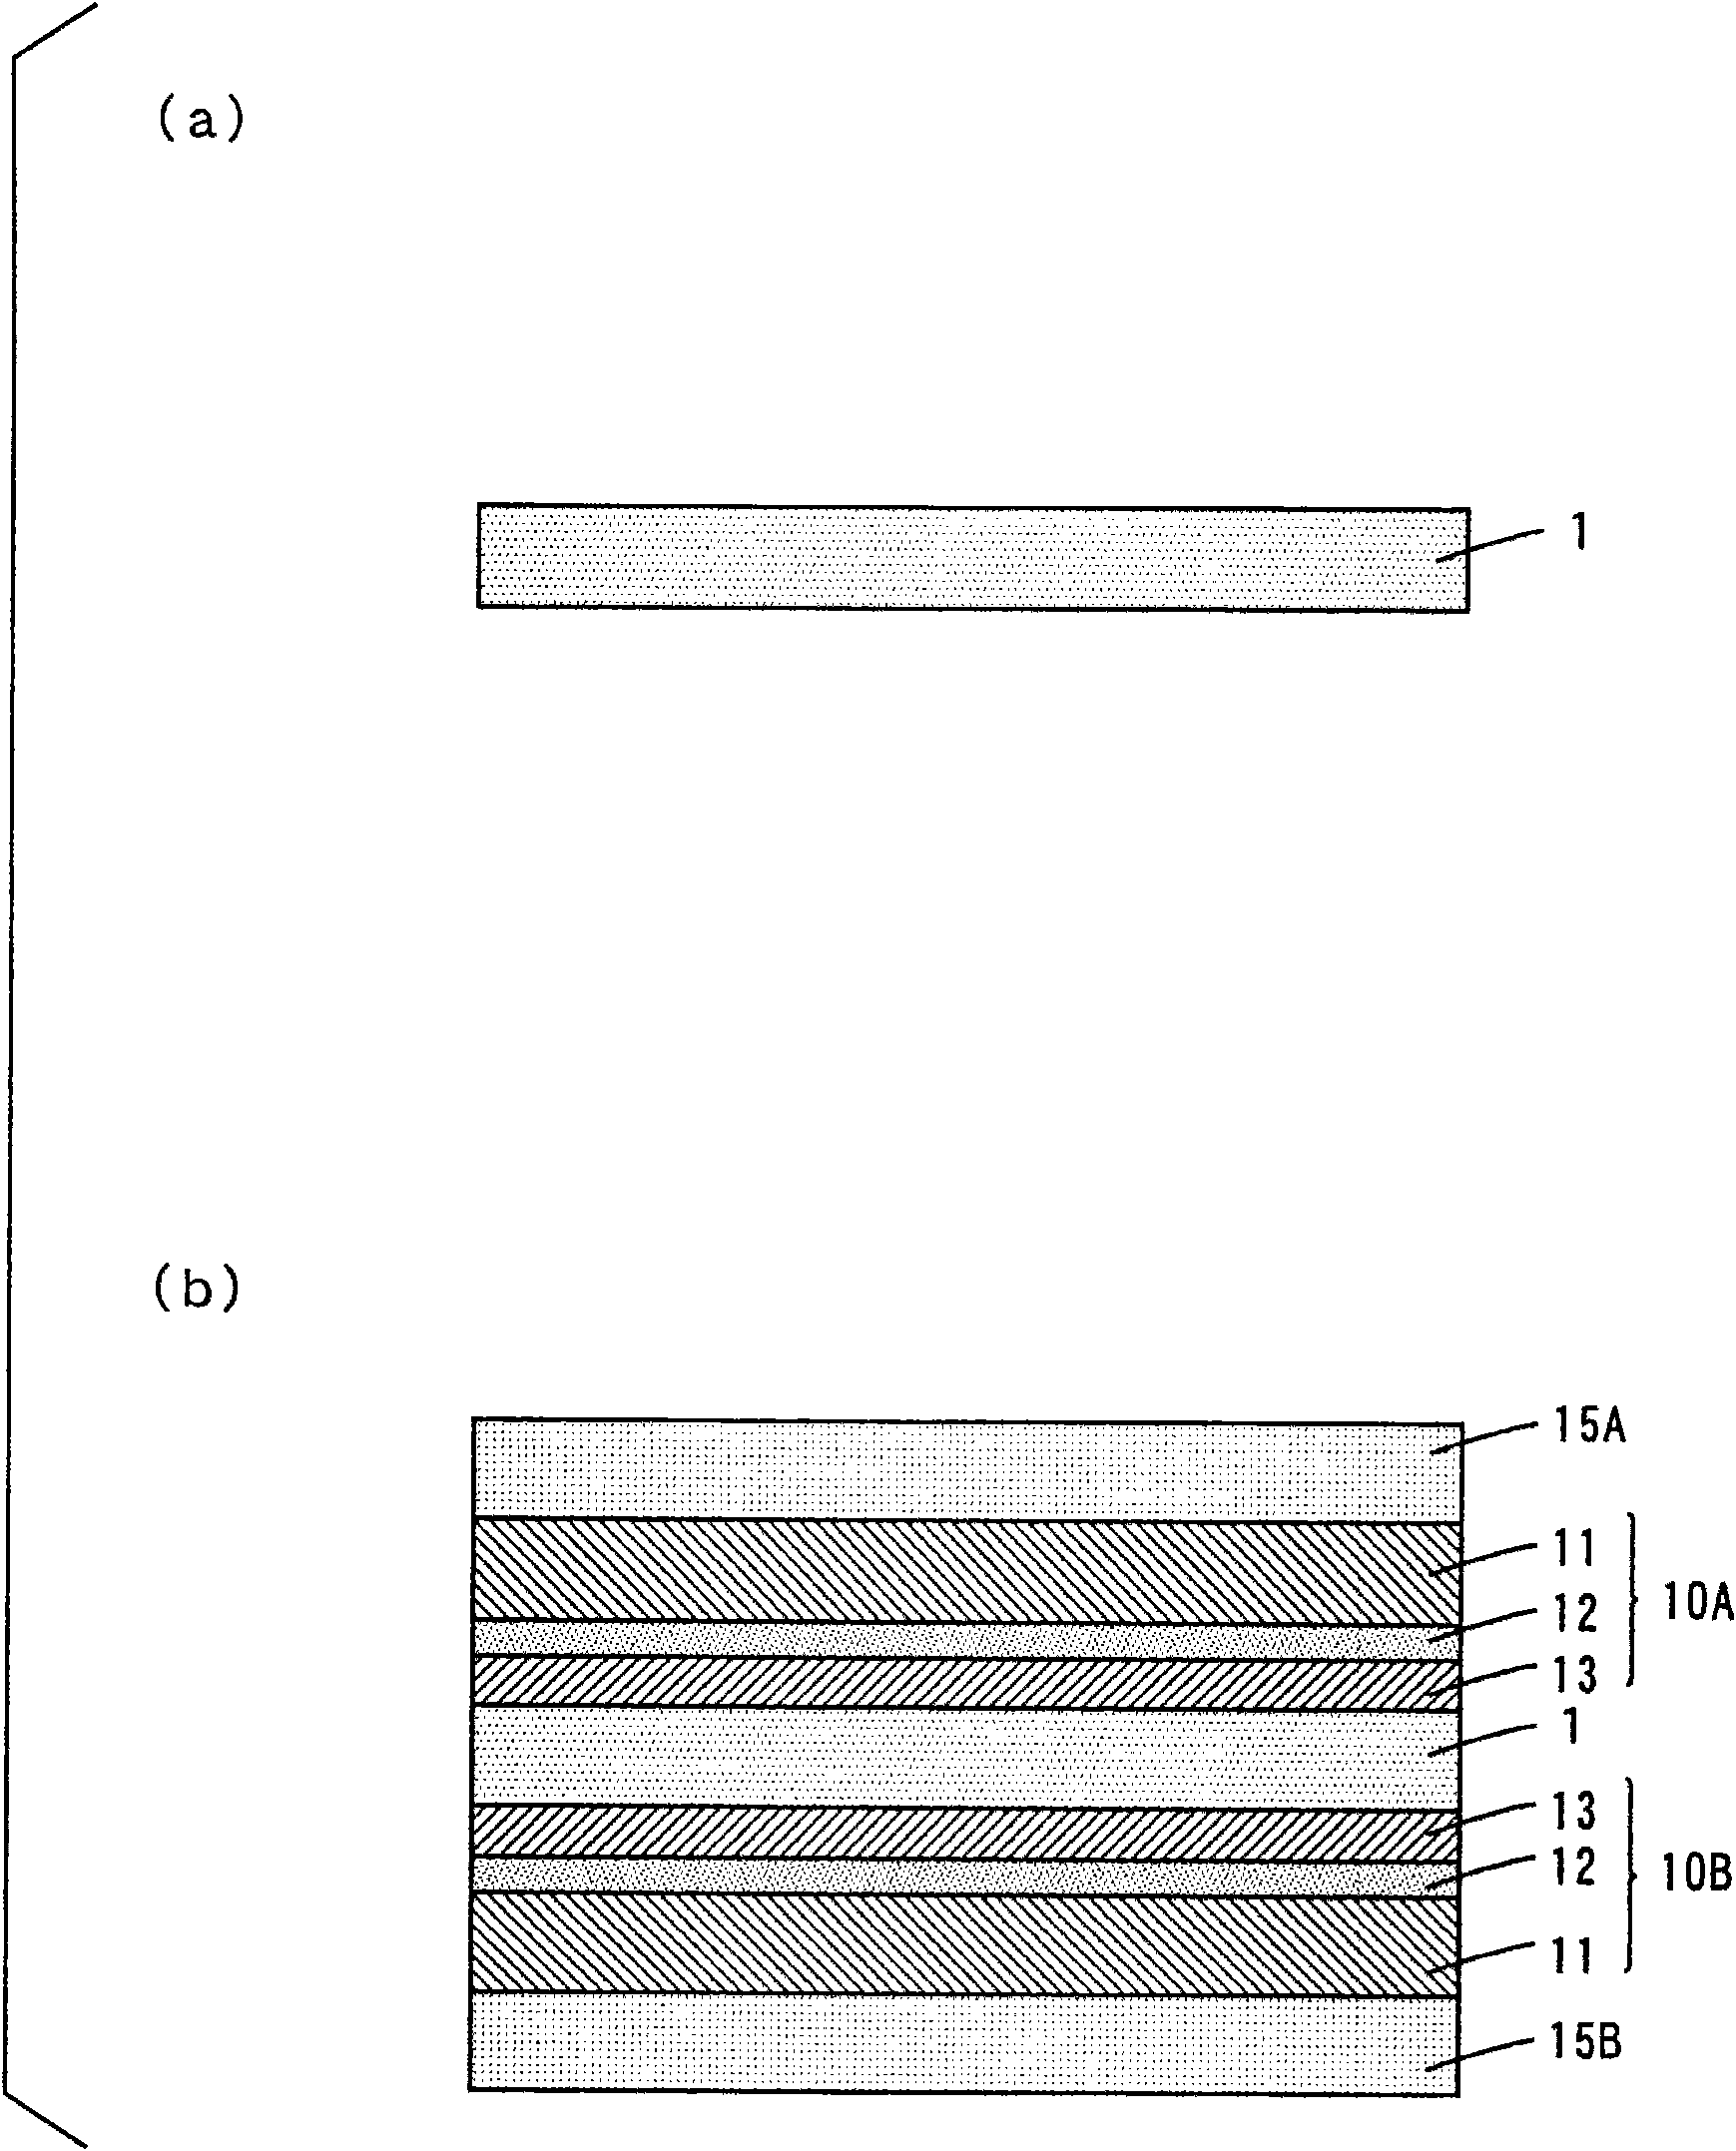 Method of manufacturing printed circuit board base sheet